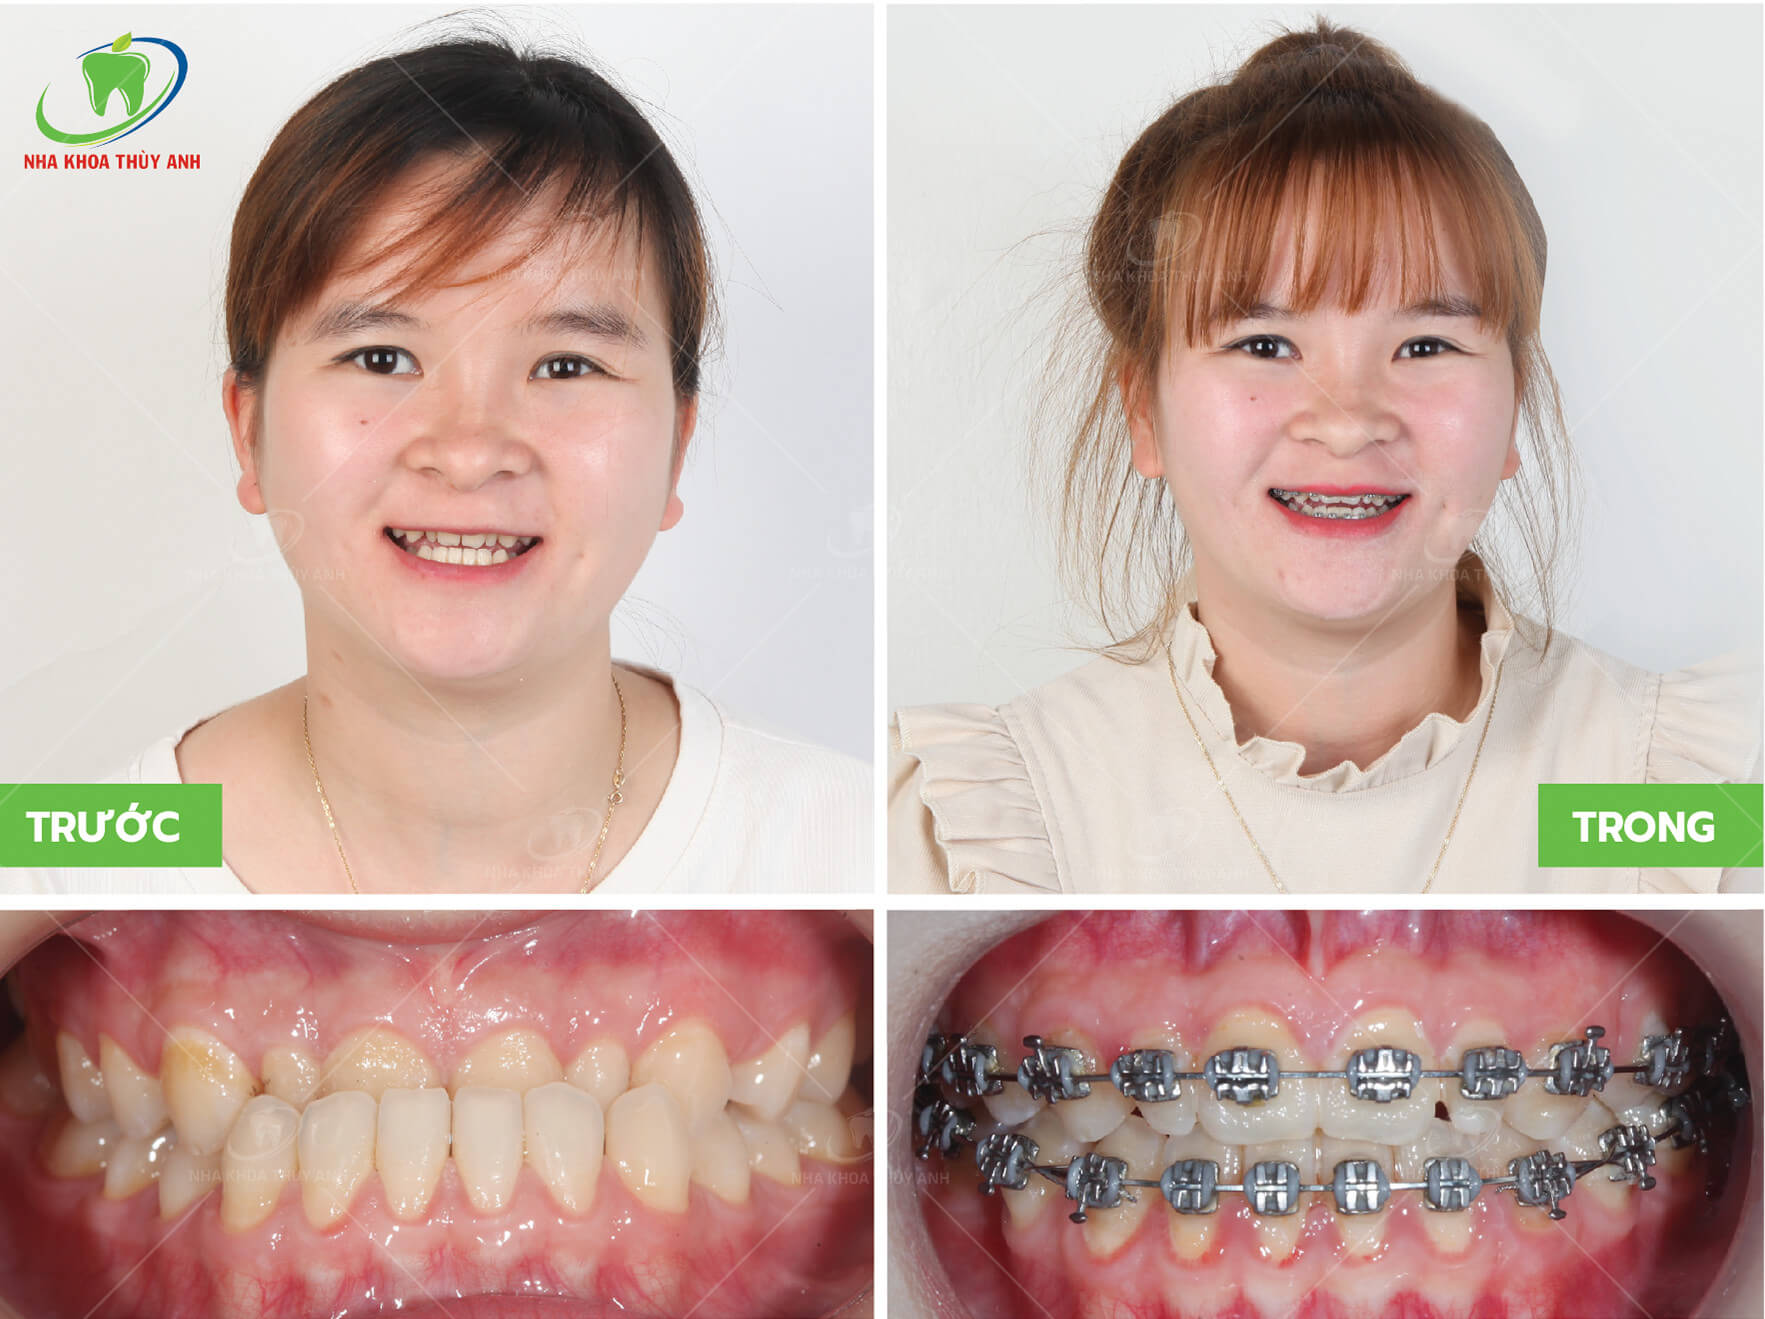 Cách nhận biết case niềng răng khó? Nha khoa Thùy Anh